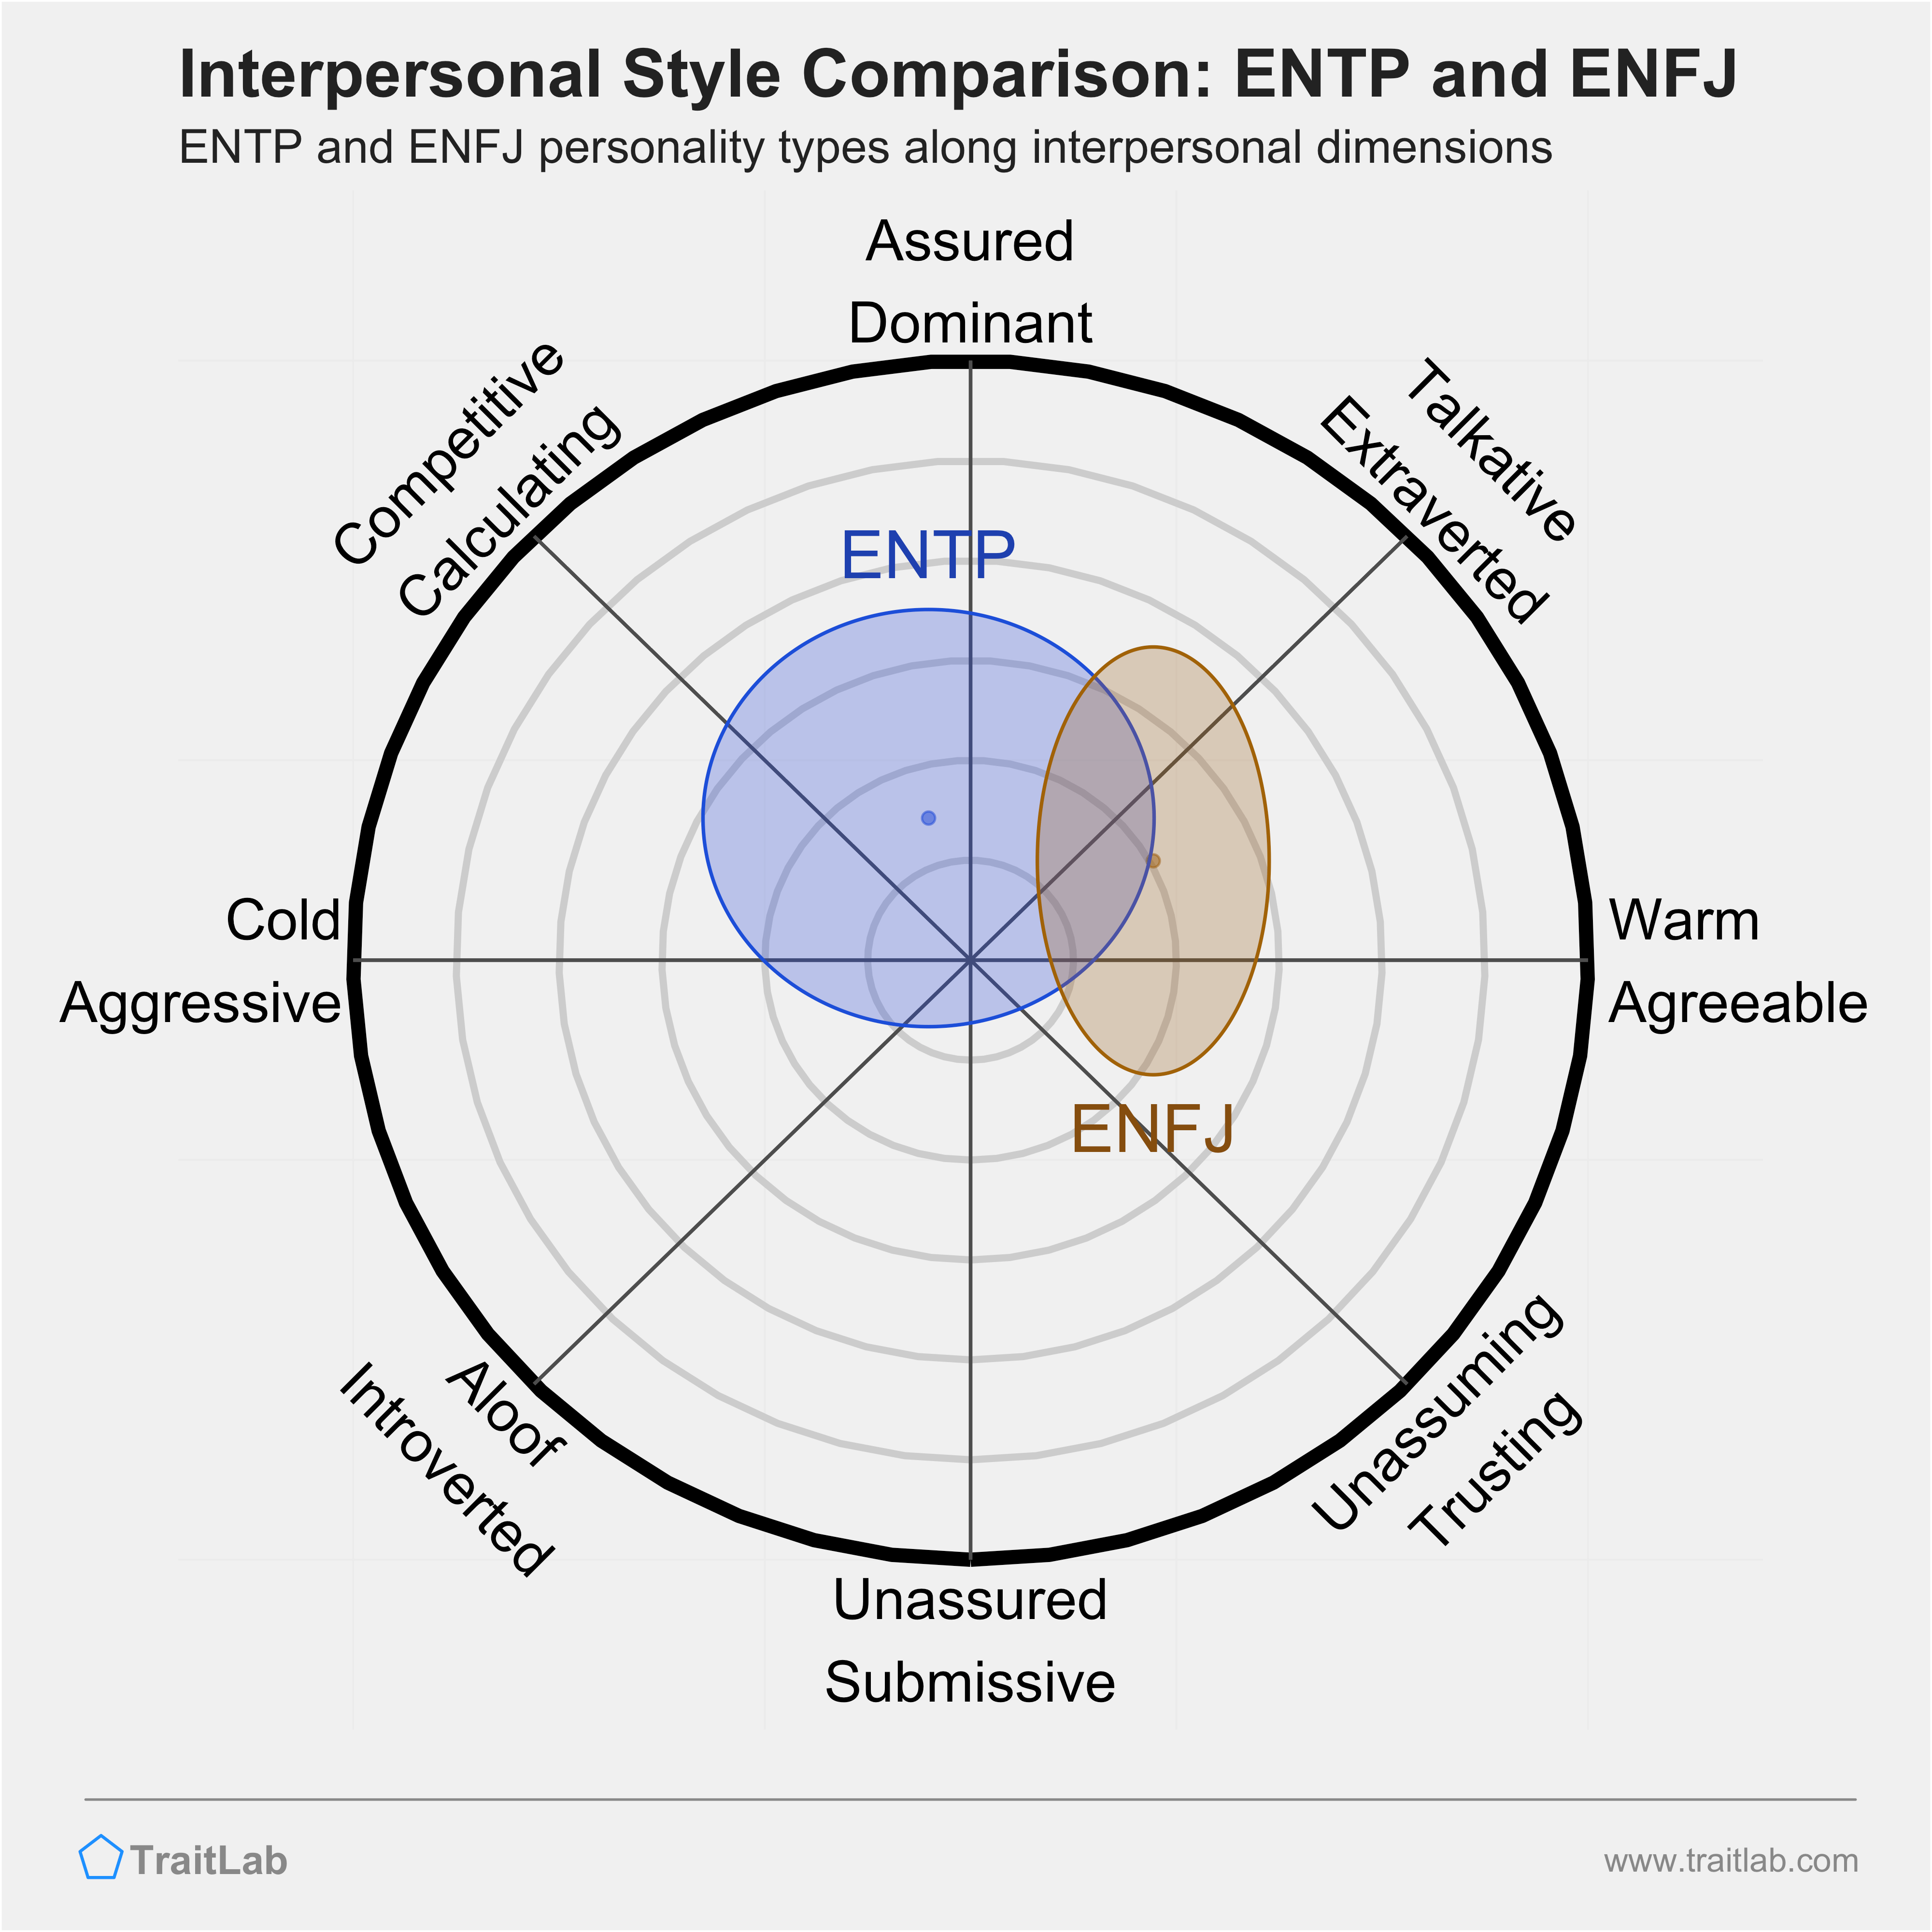 ENTP and ENFJ comparison across interpersonal dimensions